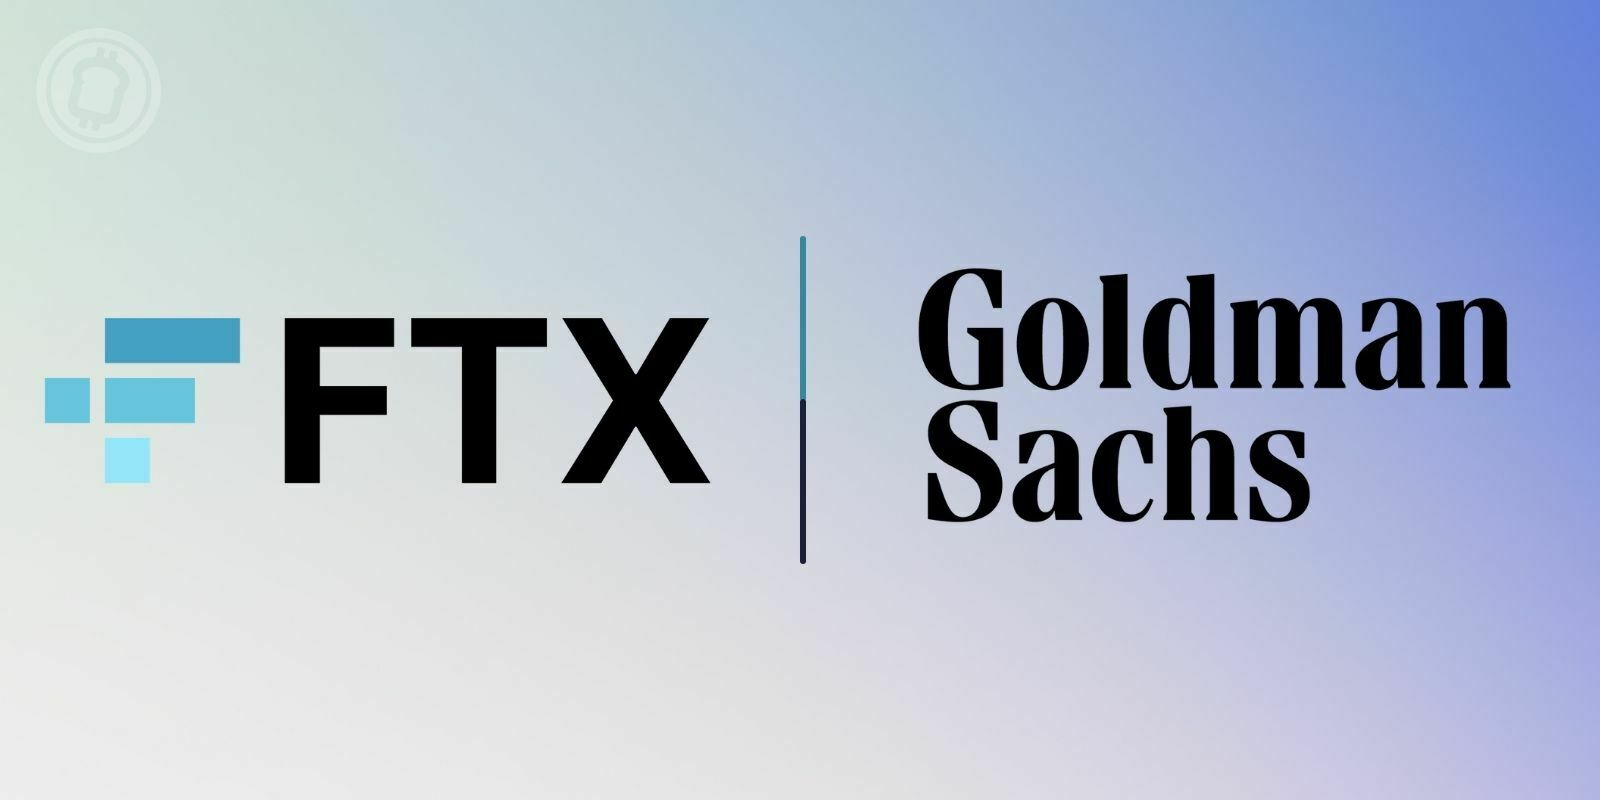 Goldman Sachs envisage de nouer un partenariat avec la plateforme FTX